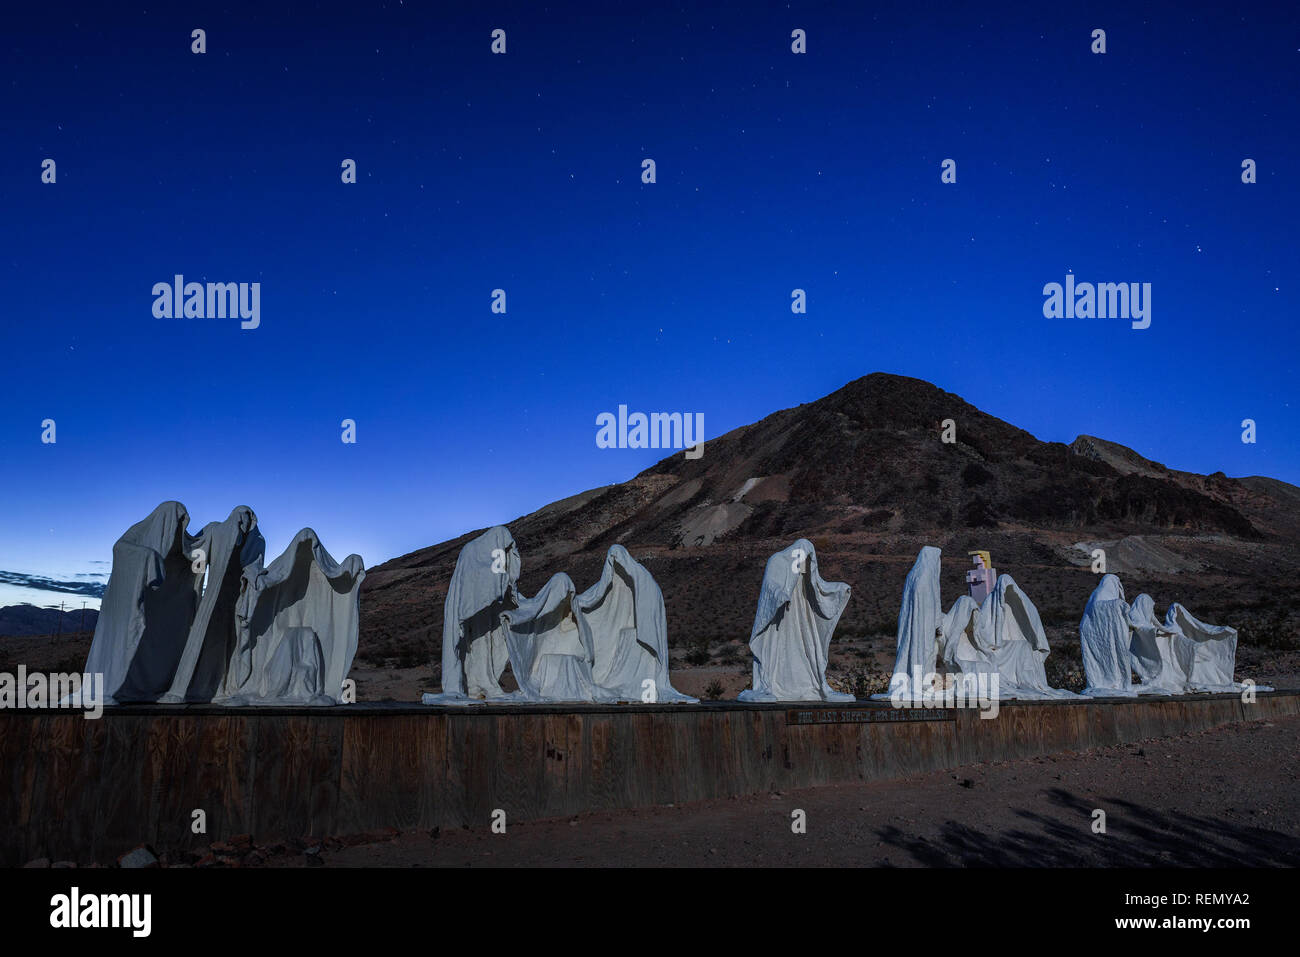 Instalación de escultura fantasma escalofriante en La riolita, Nevada Foto de stock